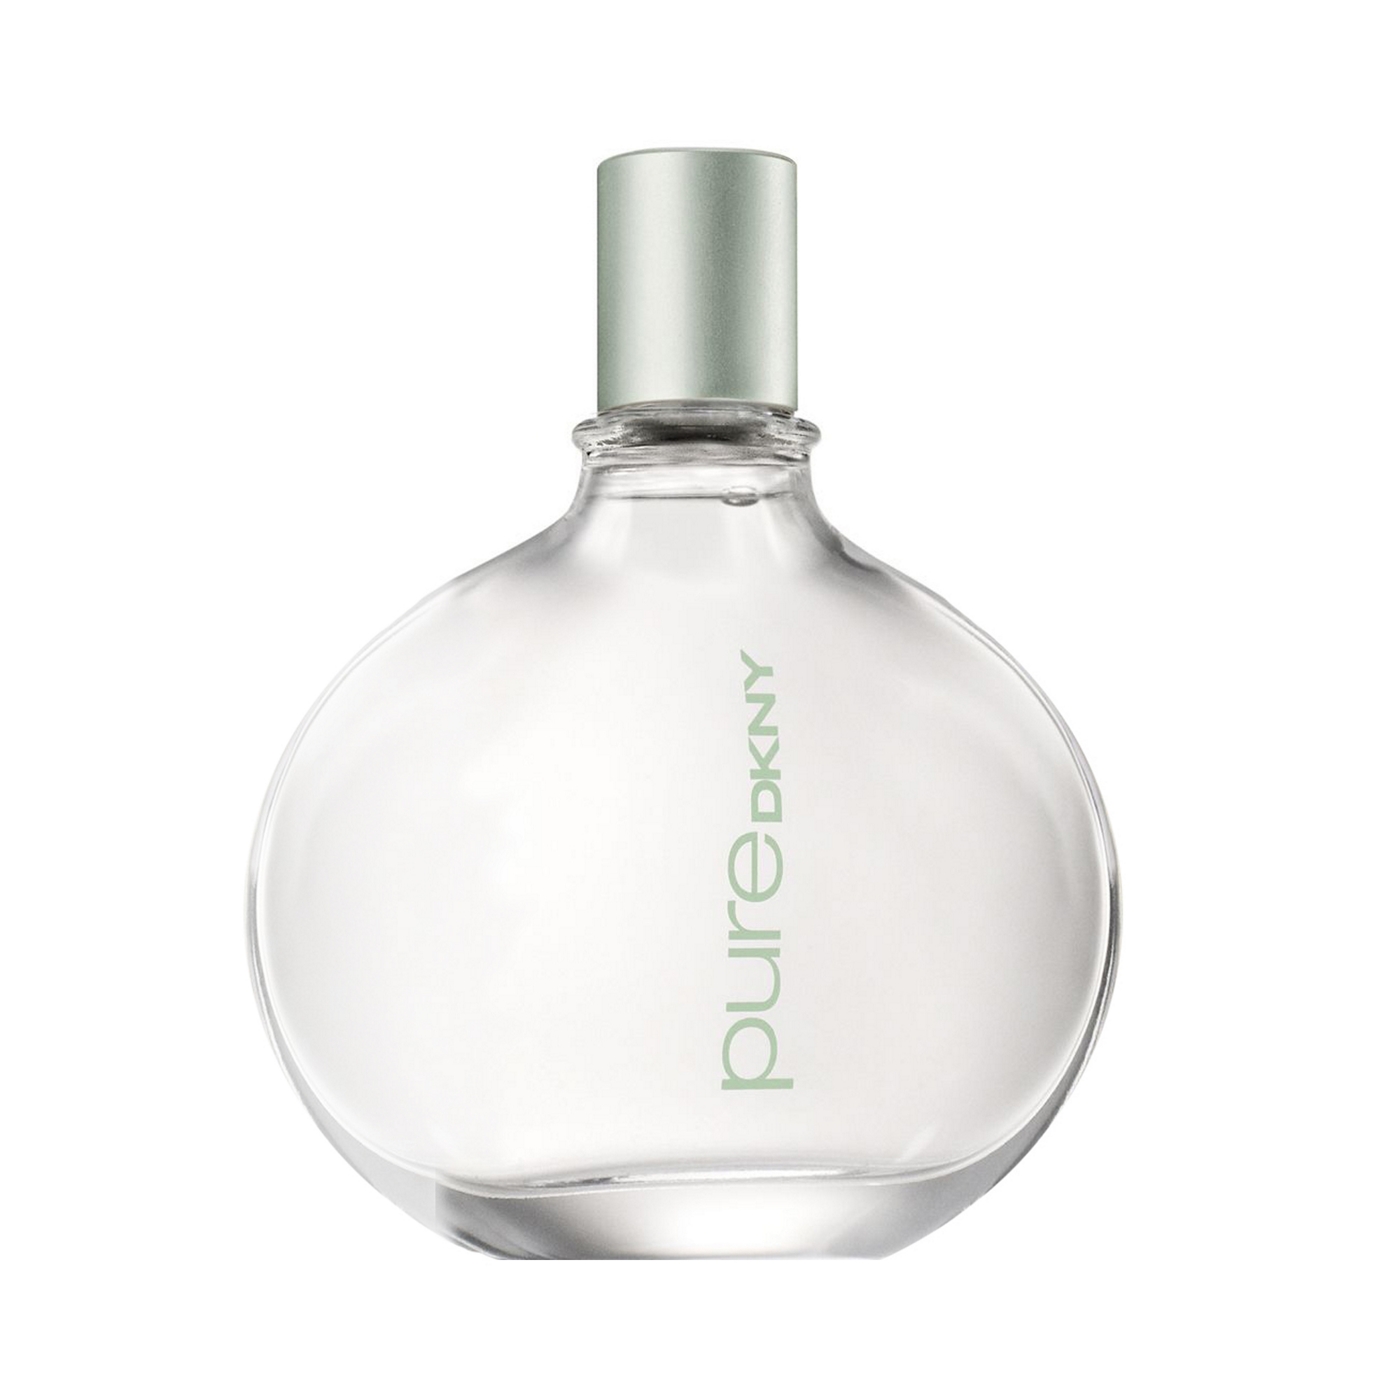 DKNY PureDKNY a drop of Verbena eau de parfum 100ml